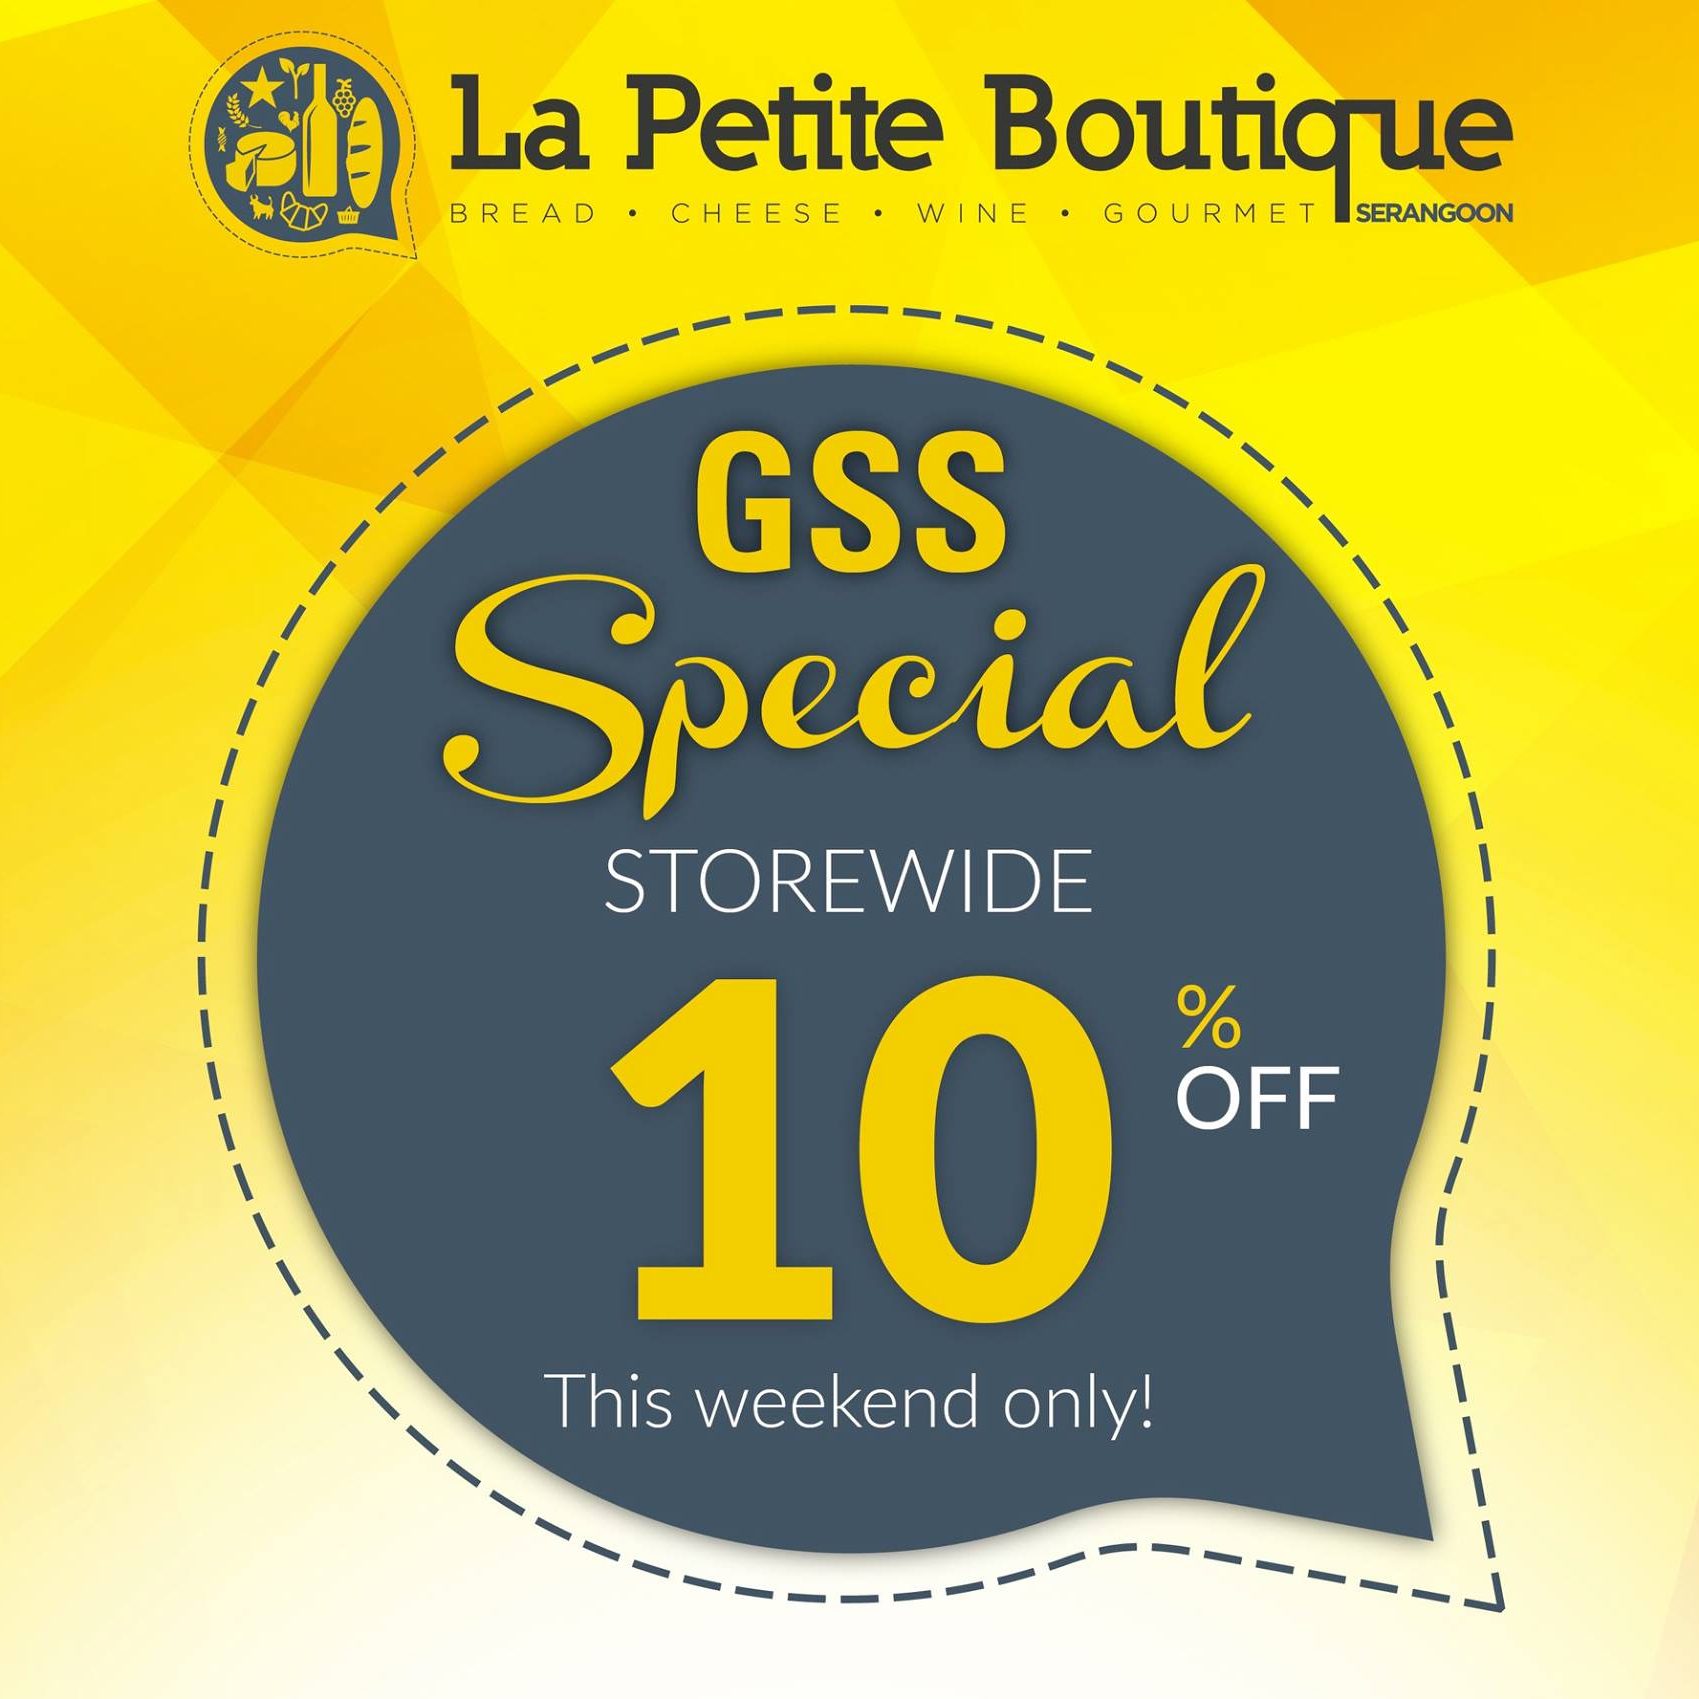 La Petite Boutique SG GSS Special 10% Off Storewide ends 12 Jun 2016